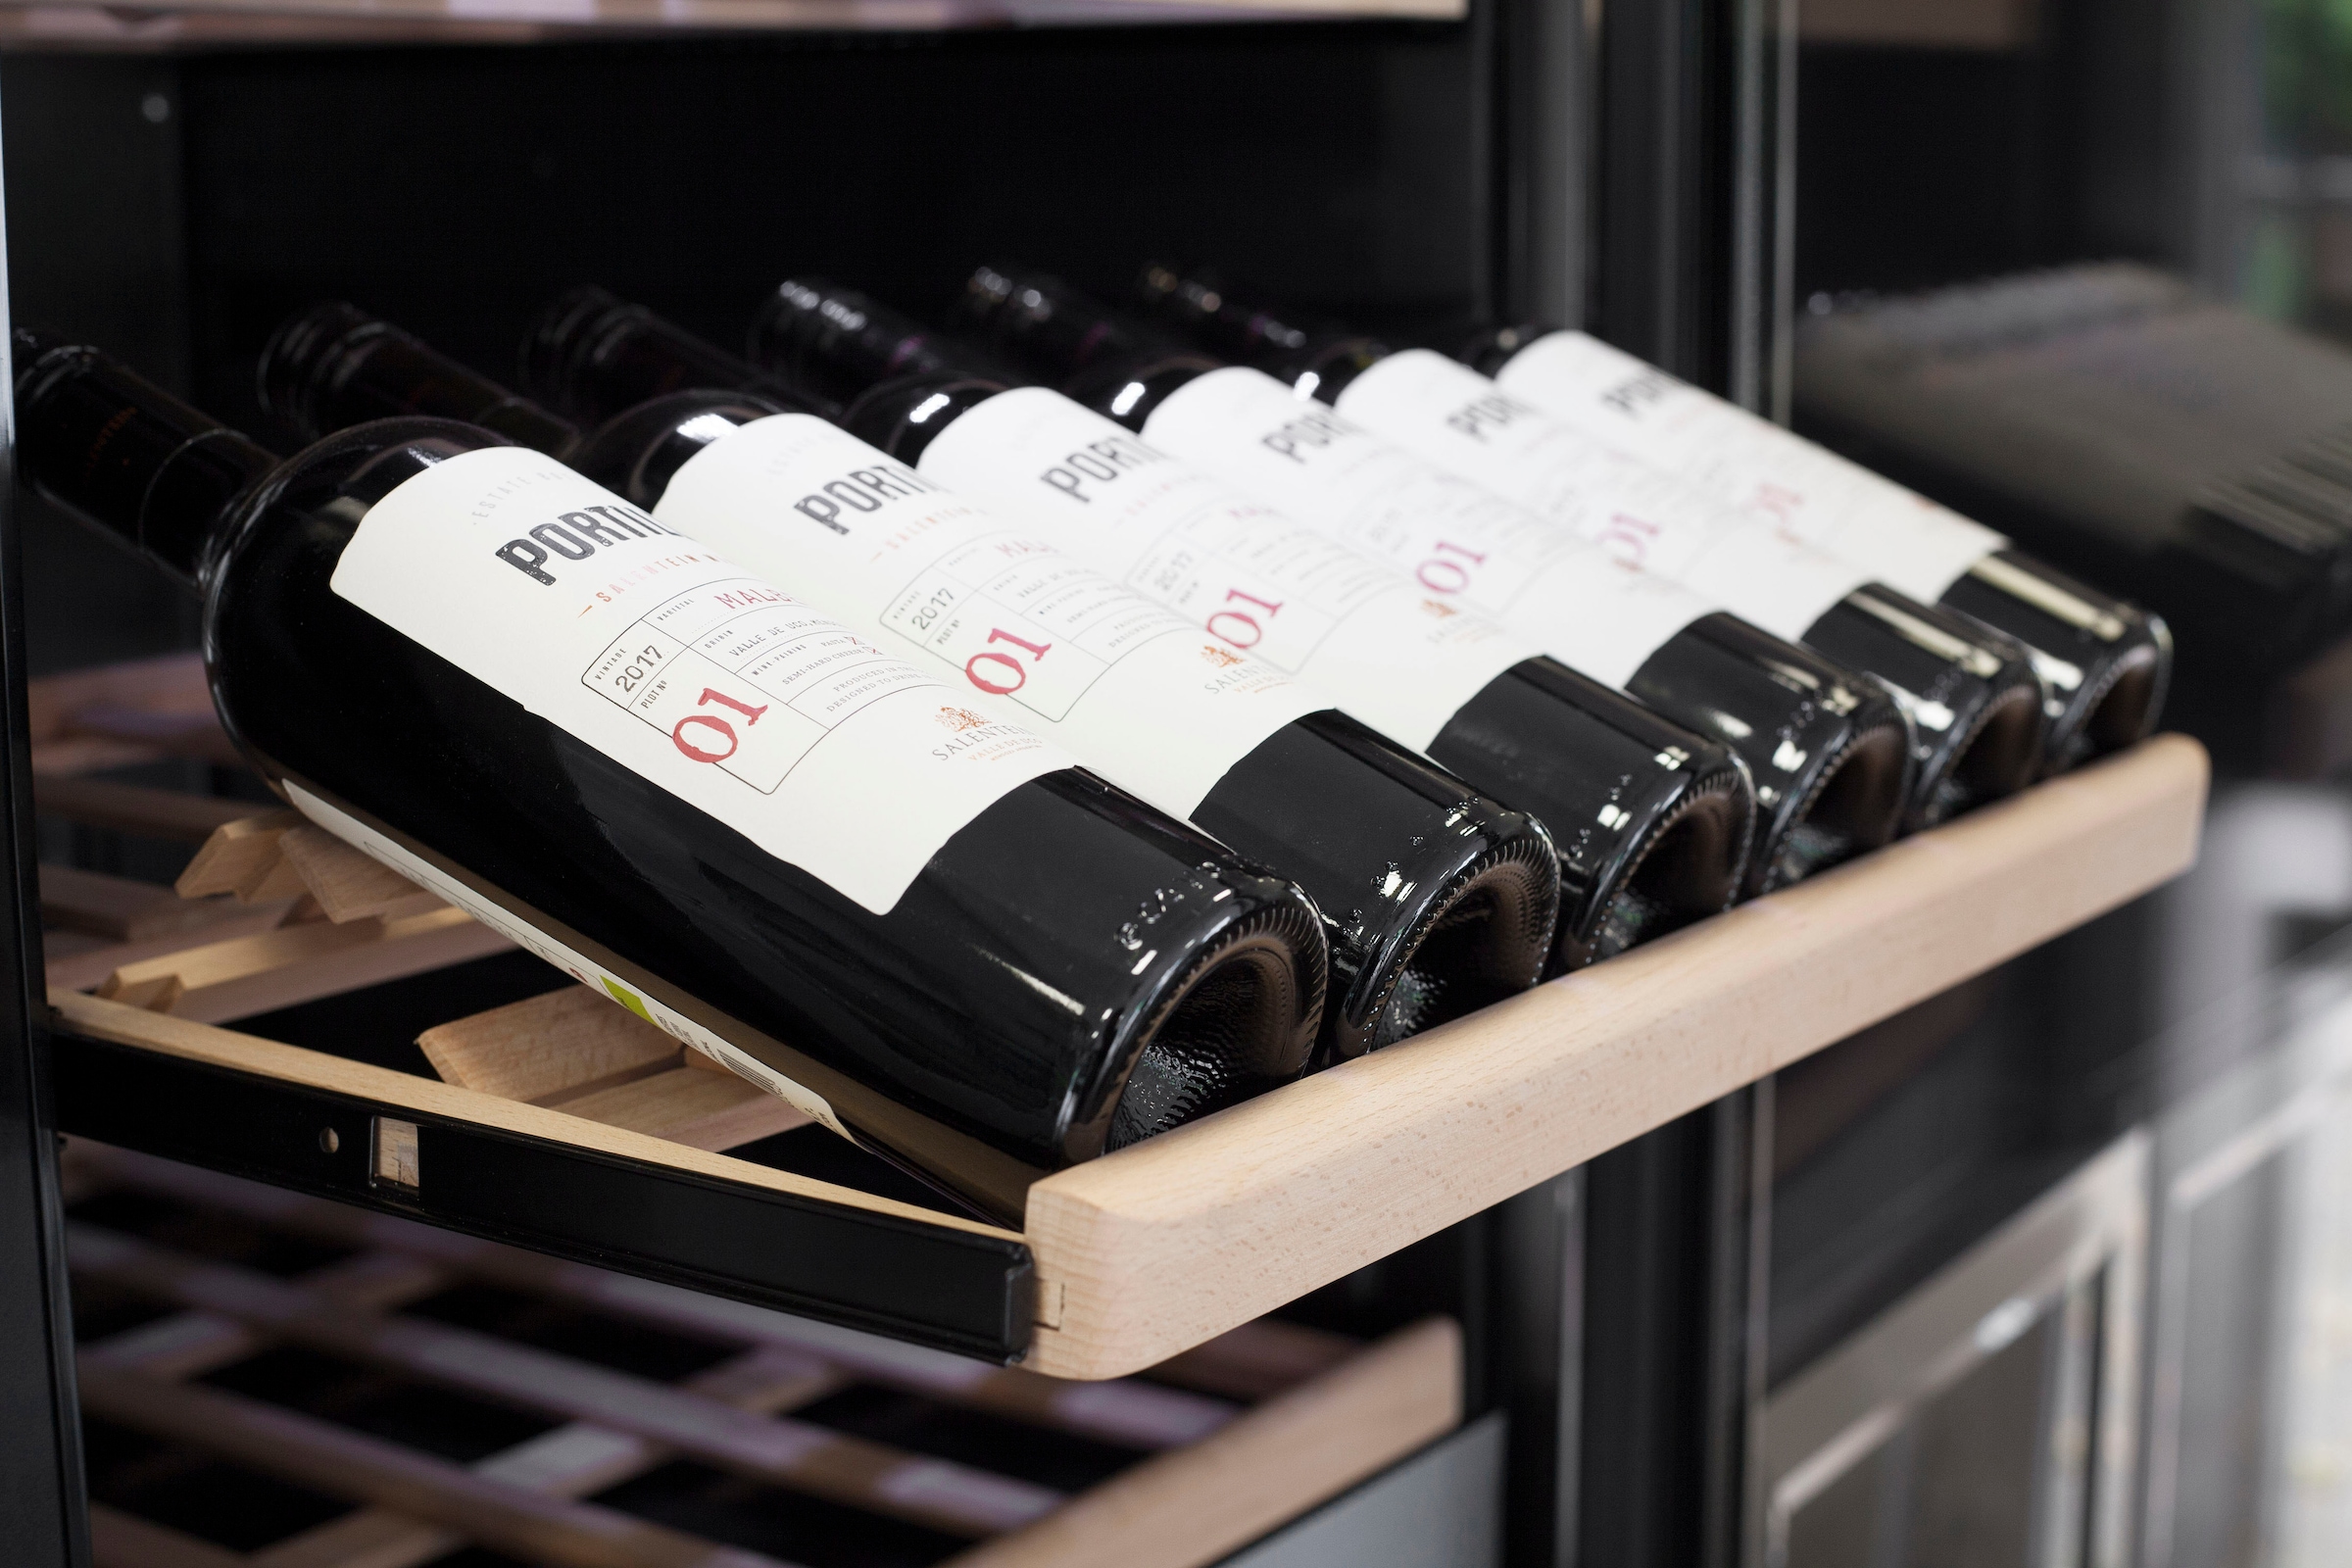 Caso Weinkühlschrank »776 WineChef Pro 126-2D«, für 126 Standardflaschen á 075l